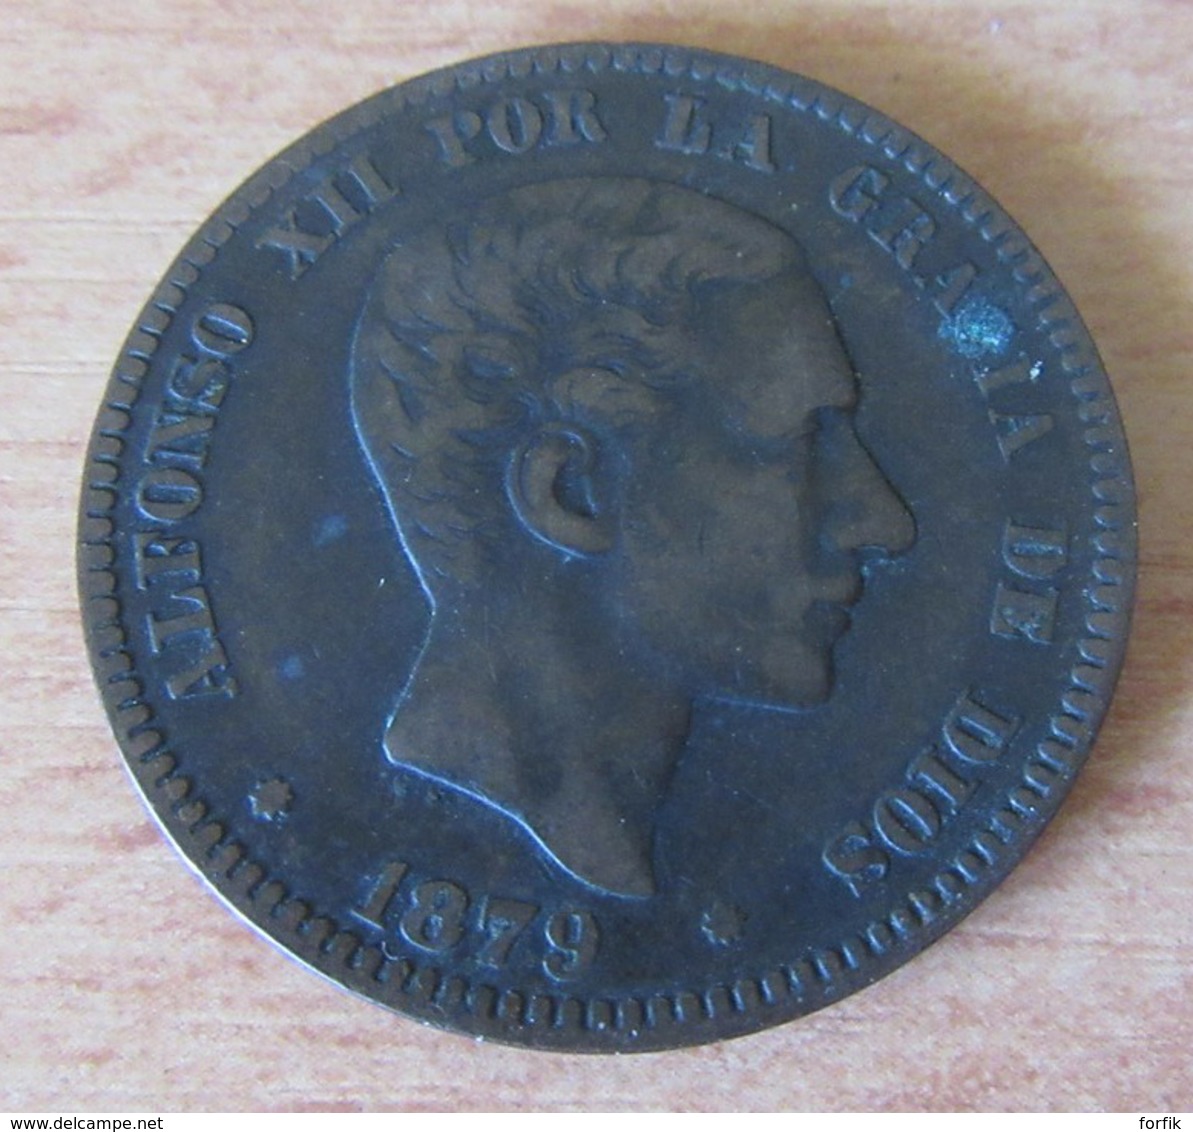 Espagne / Espana - Monnaie Diez (10) Centimos Alfonso XII 1879 OM - Eerste Muntslagen